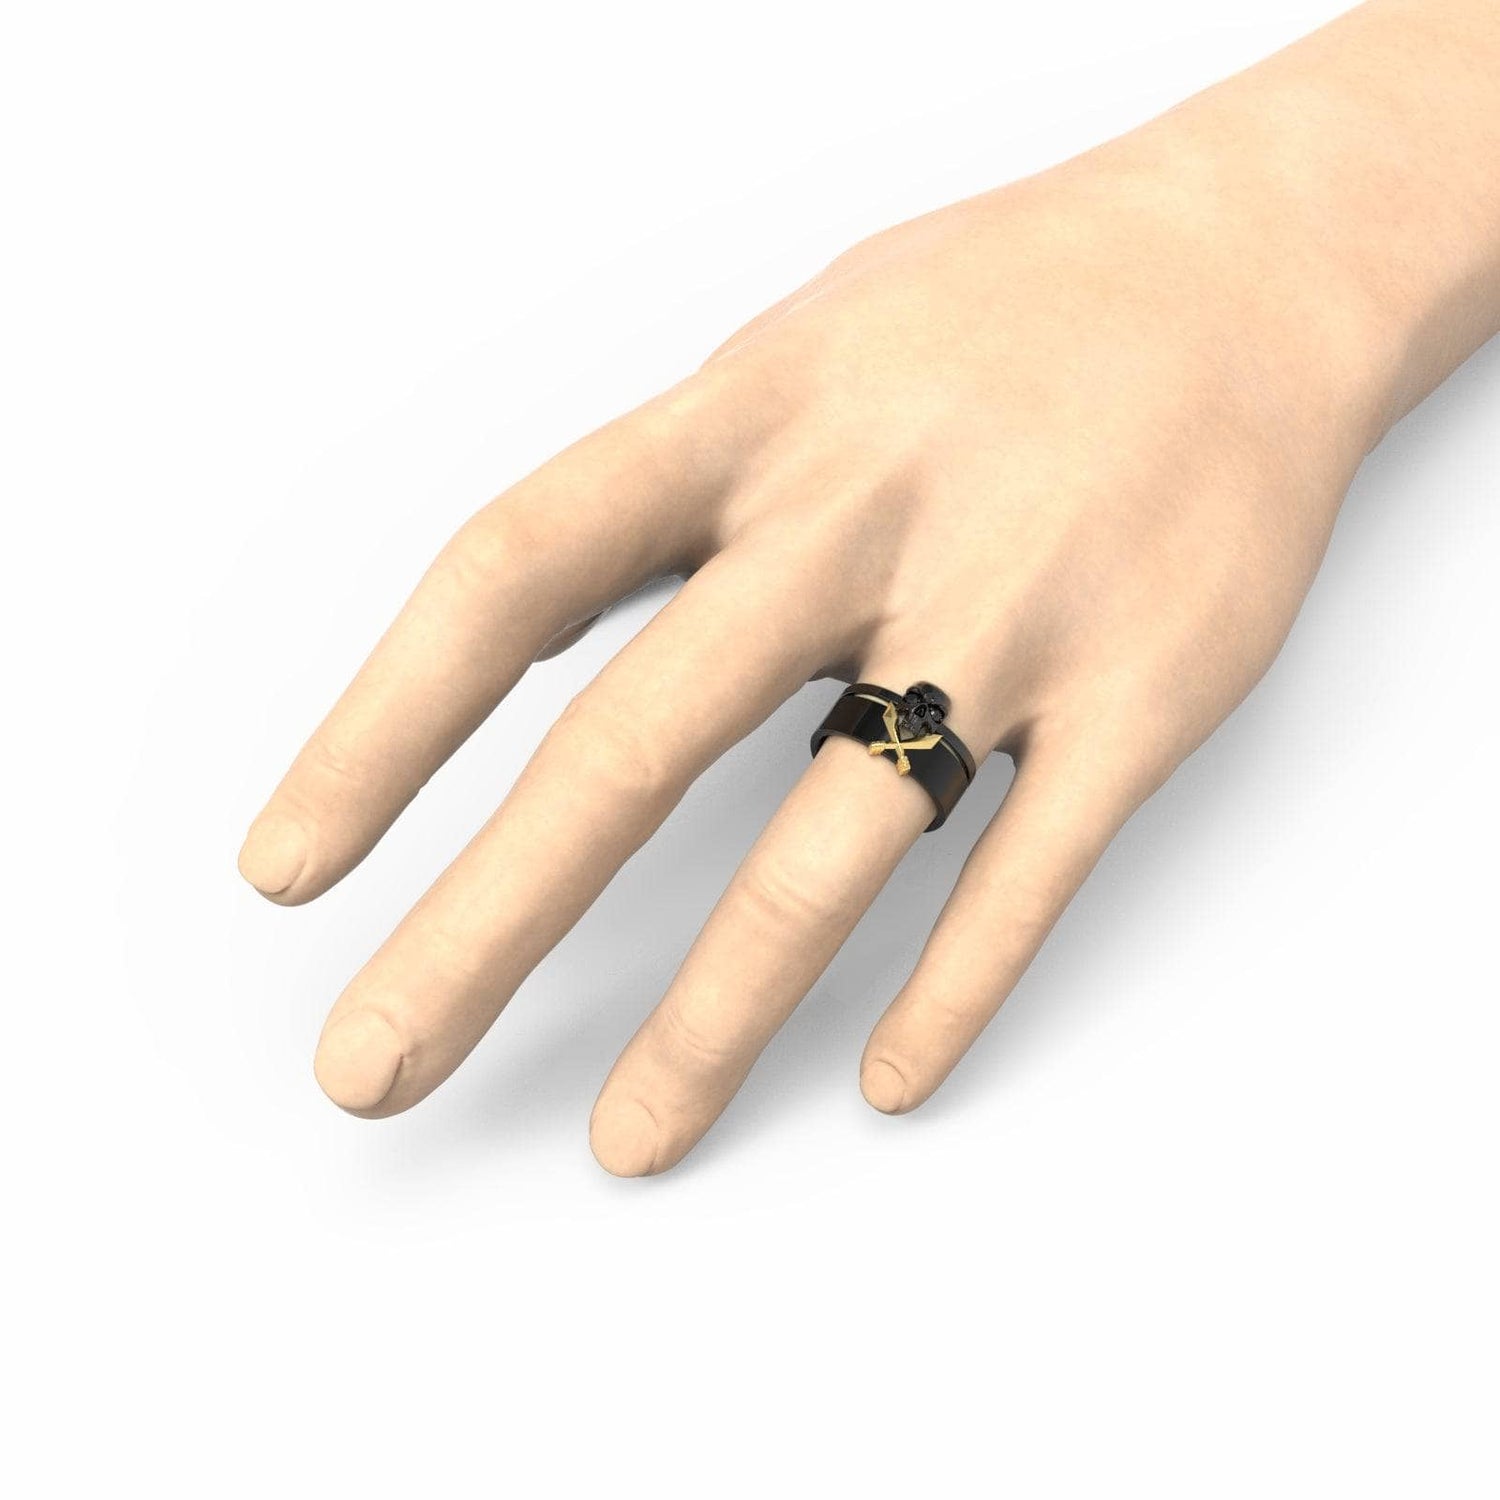 Necromancer's Couples Ring- 14k Rose Gold Video Game Inspired Rings-Black Diamonds New York